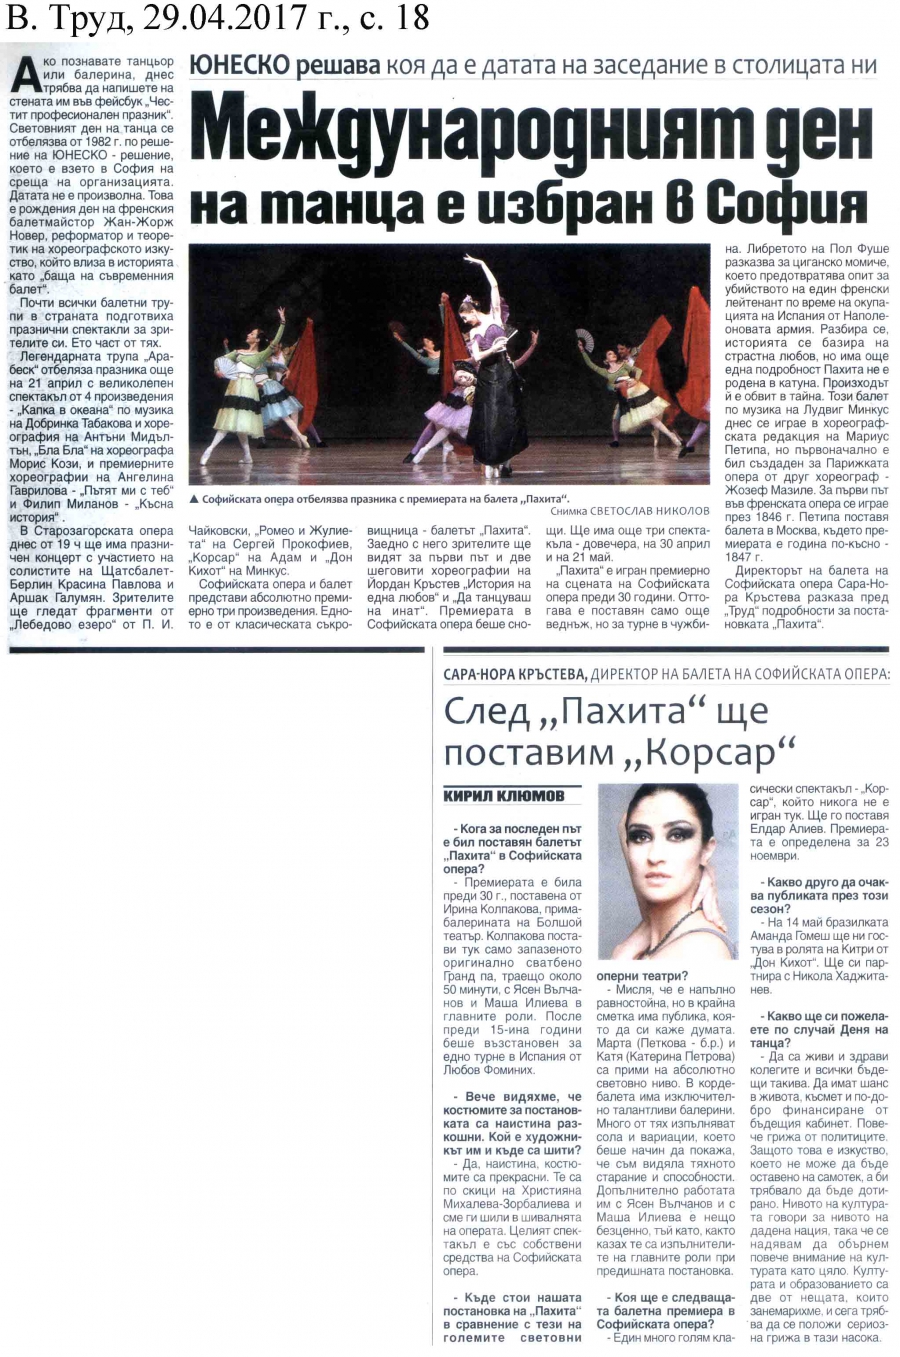 В. ТРУД - Международният ден на танца е избран в София. Сара -Нора Кръстева: "След "Пахита" ще поставим "Корсар"